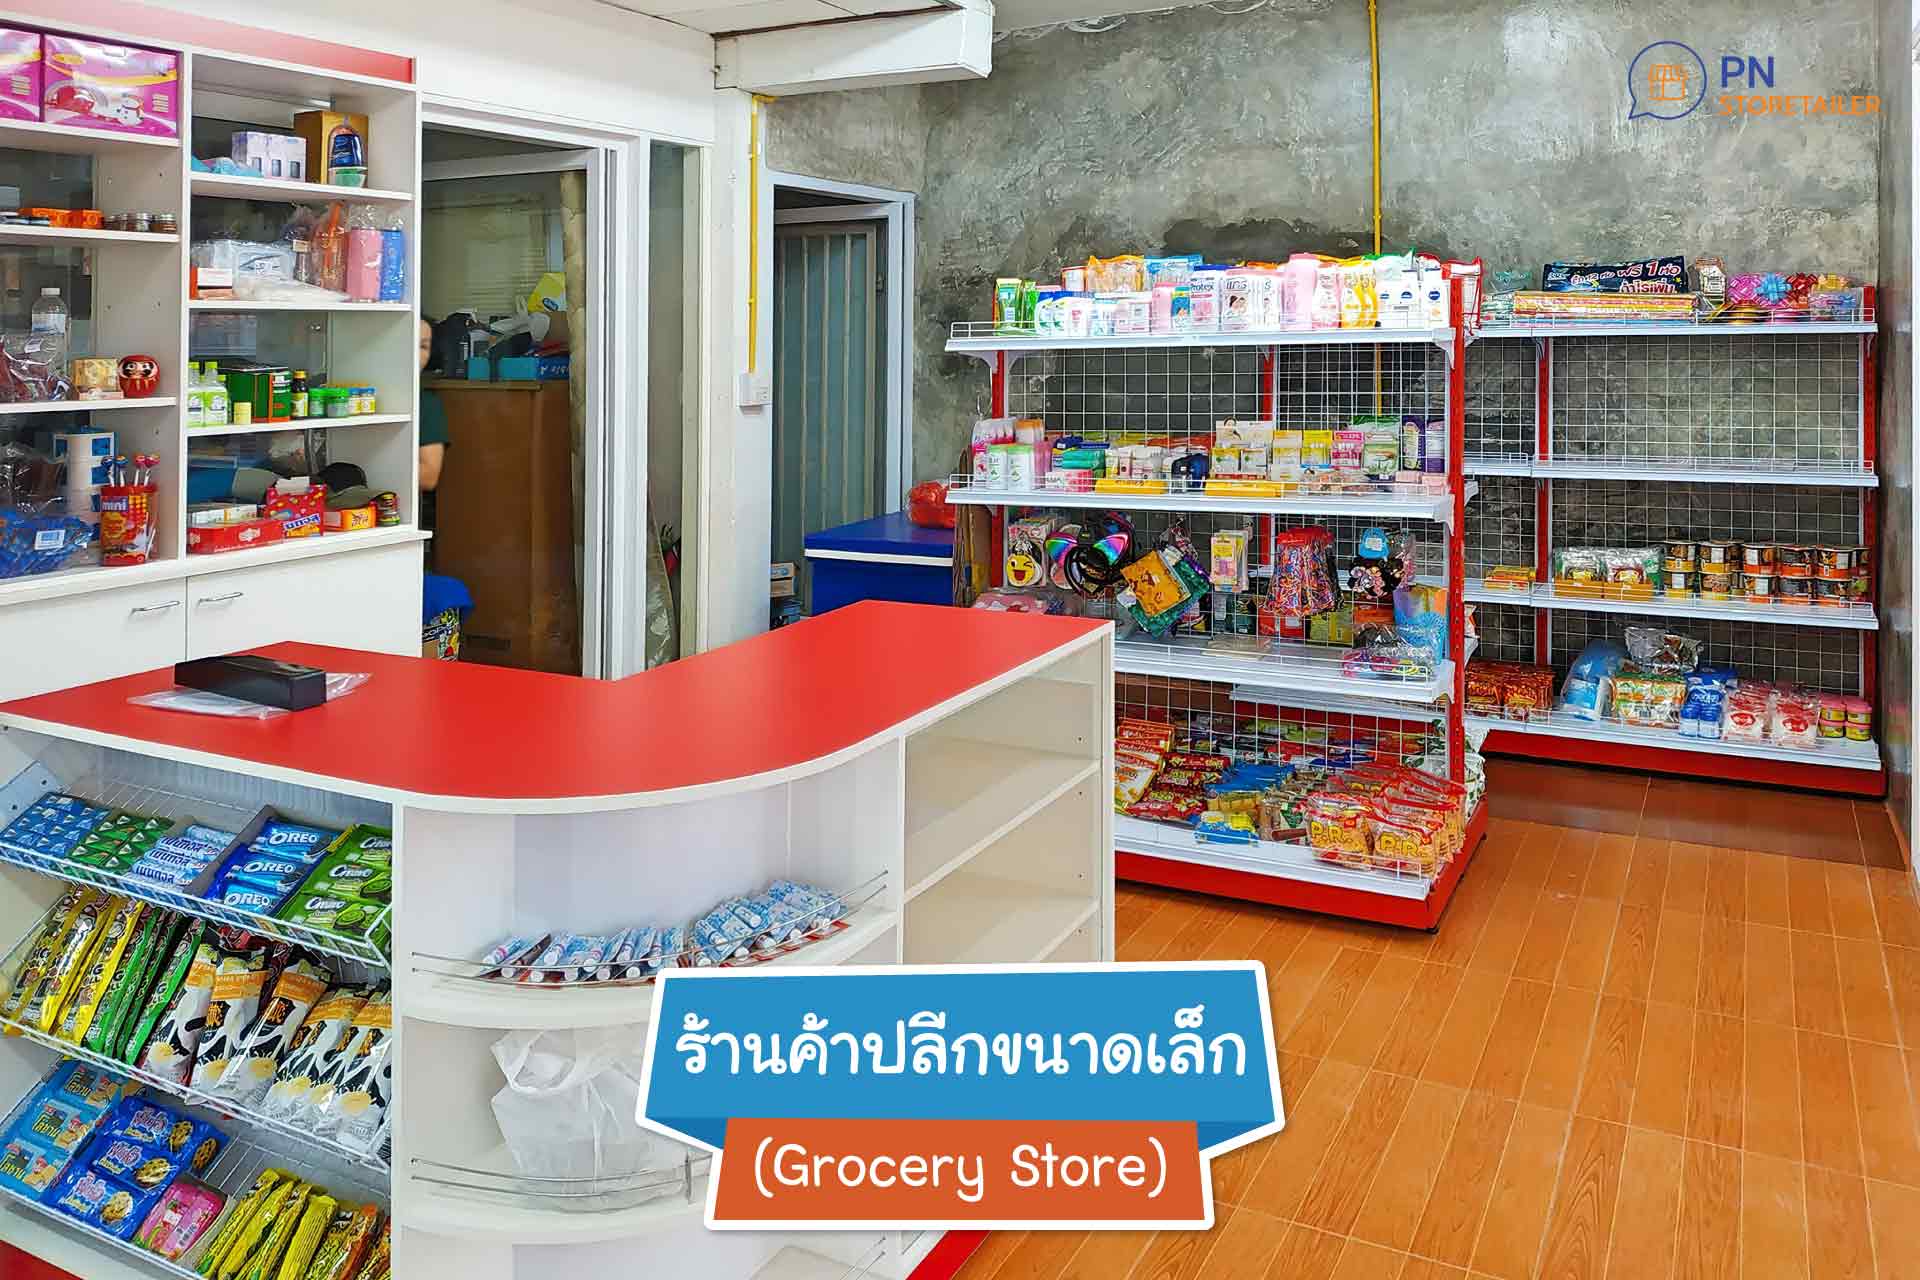 1. ร้านค้าปลีกขนาดเล็ก (Grocery Store)